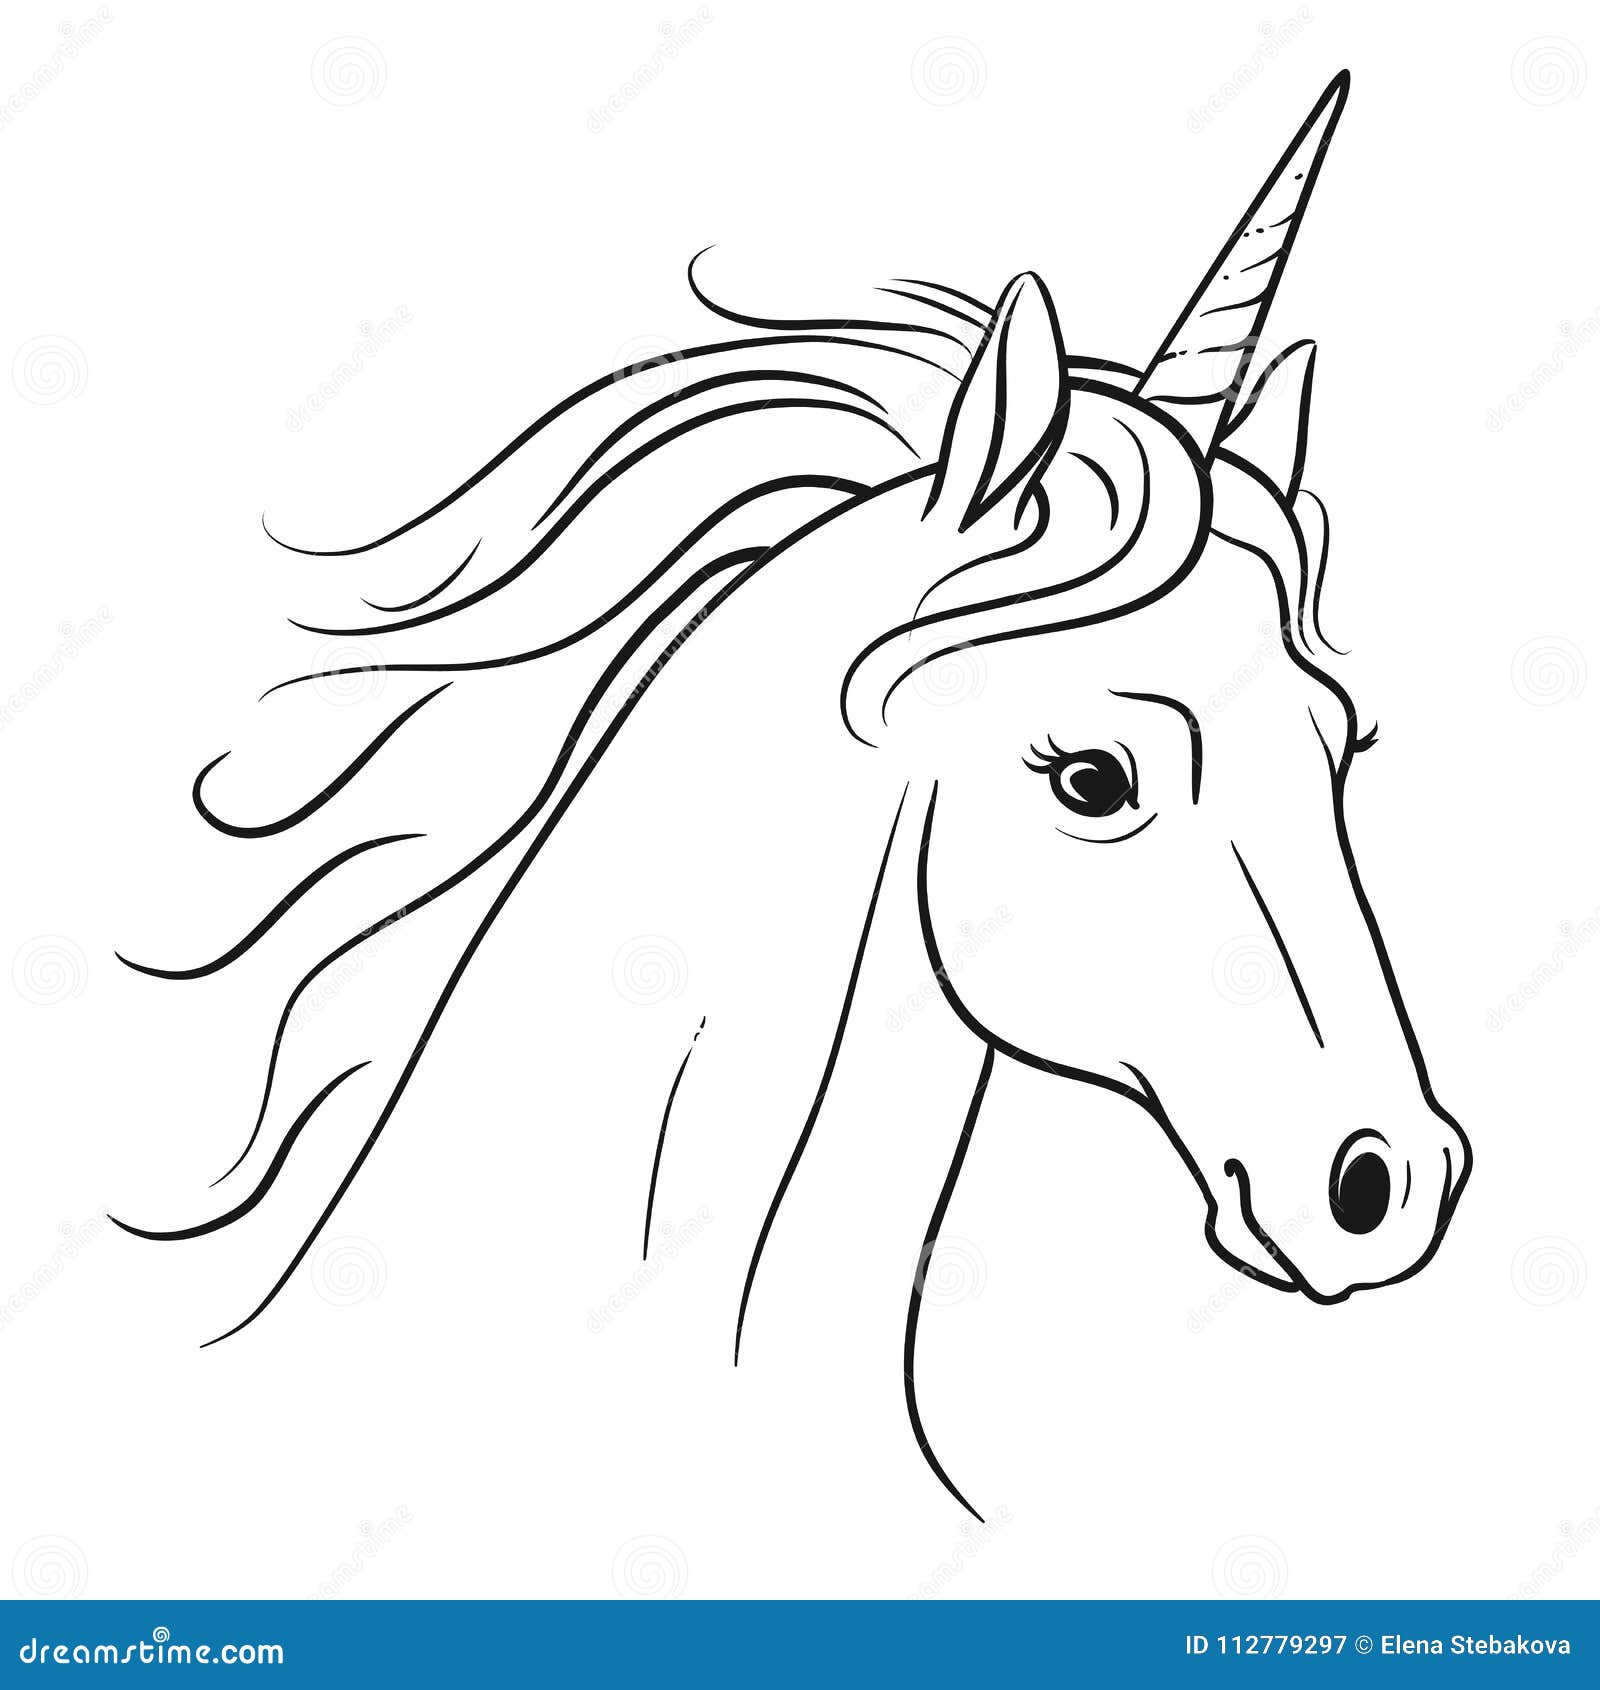 Featured image of post Imagenes De Unicornios Kawaii En Blanco Y Negro Los unicornios han sido desde cientos de a os animales mitol gicos residuos de esperanzas m gicas y estereotipos de bellezas casi imposibles